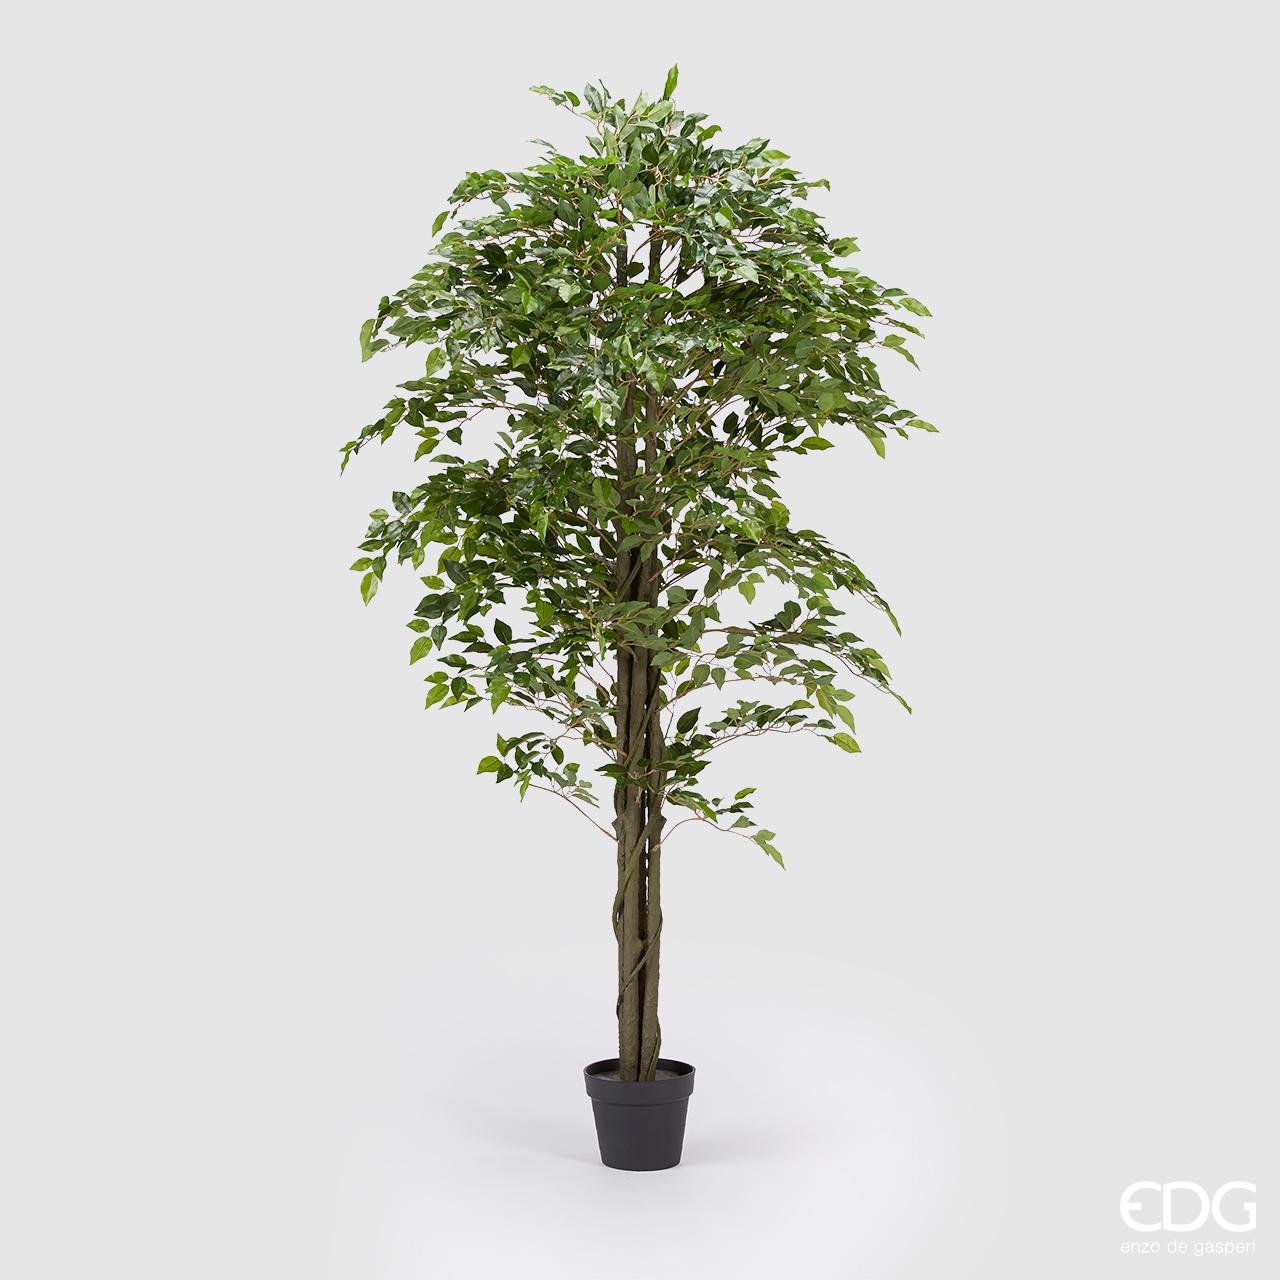 Pianta di Ficus Benjamin ornamentale artificiale con vaso in PVC. Dimensioni: altezza cm 180. In negozio e online su tuttochic.it